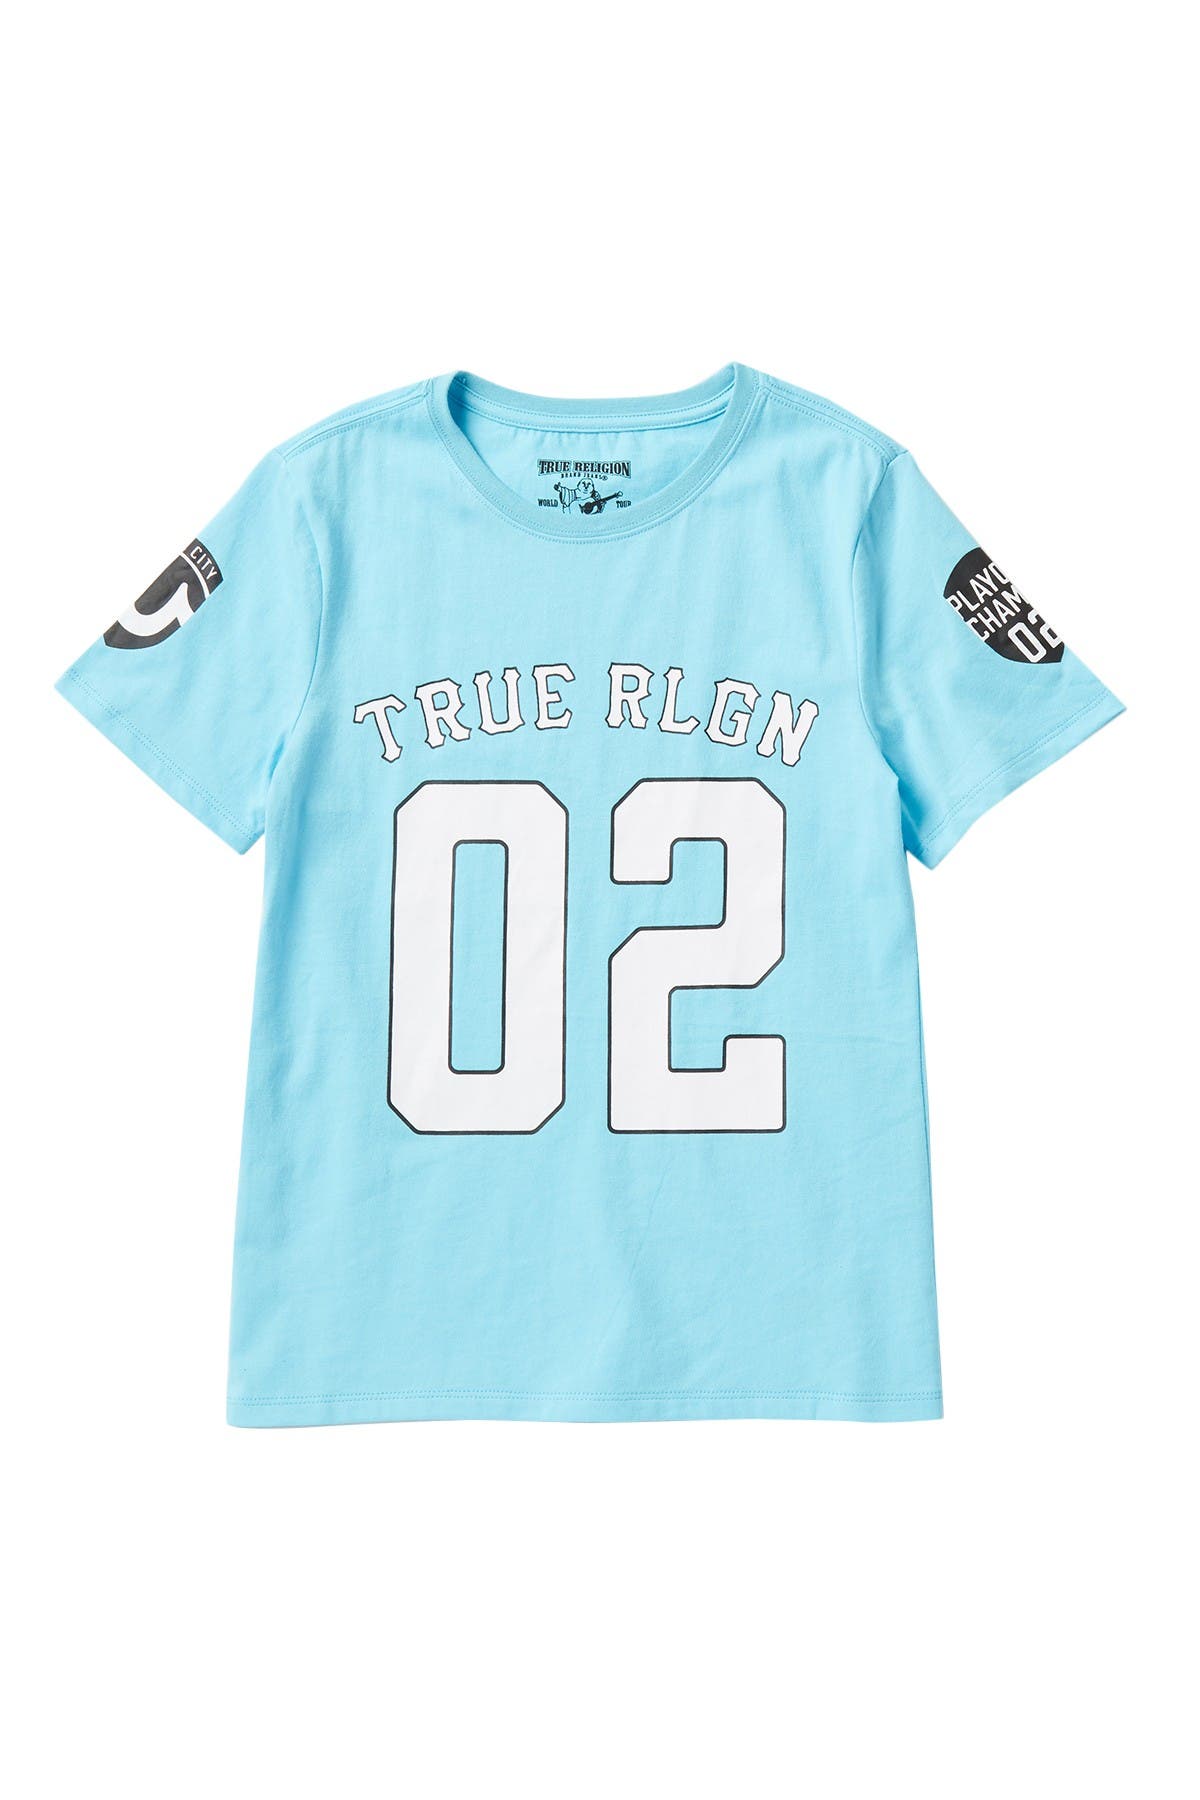 true religion 02 shirt